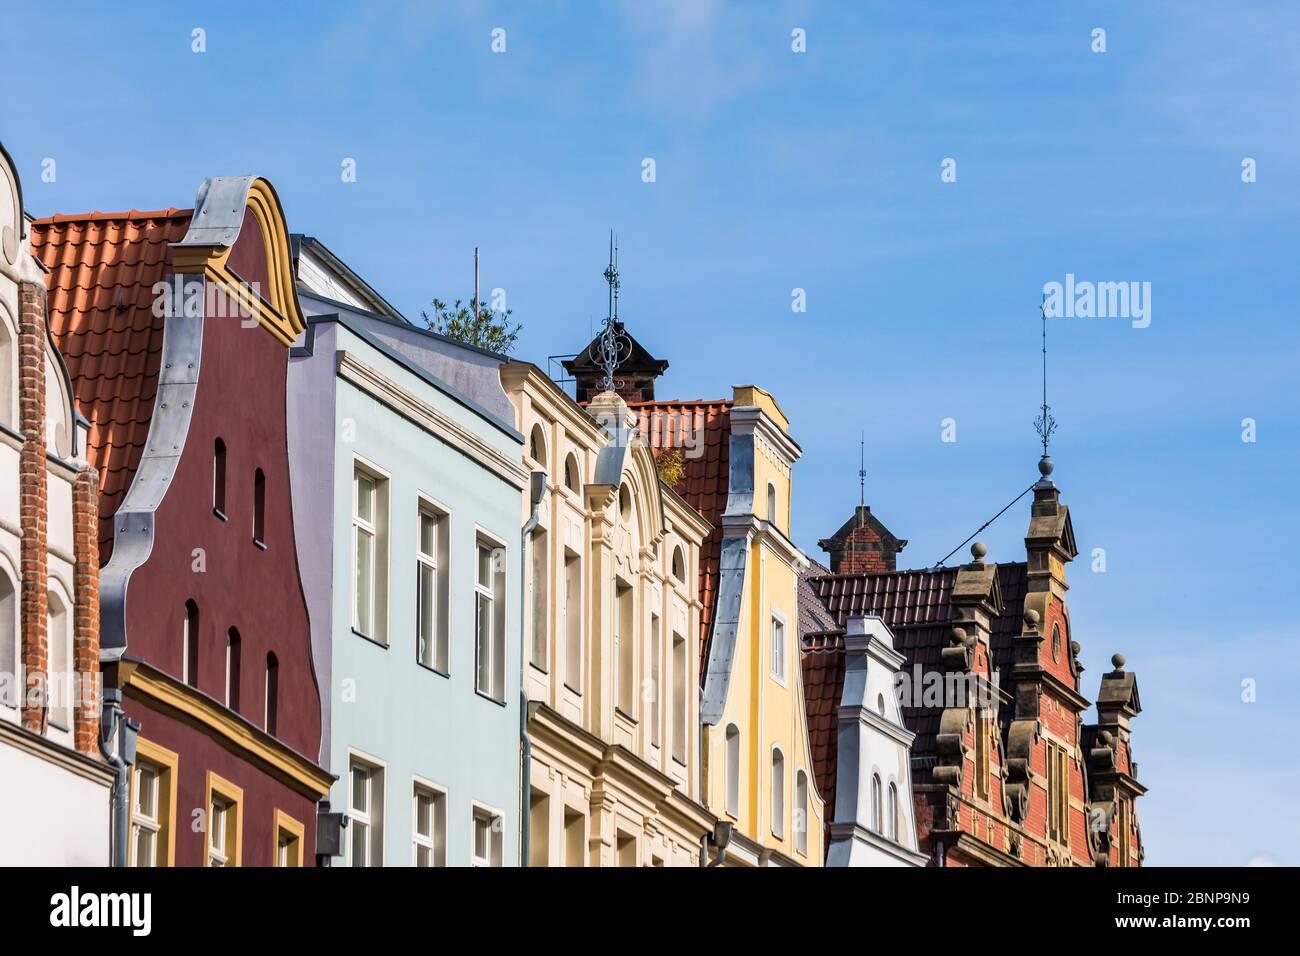 Germania, Meclemburgo-Pomerania occidentale, costa del Mar Baltico, Stralsund, città vecchia, case storiche, case con tetto, facciate di case Foto Stock